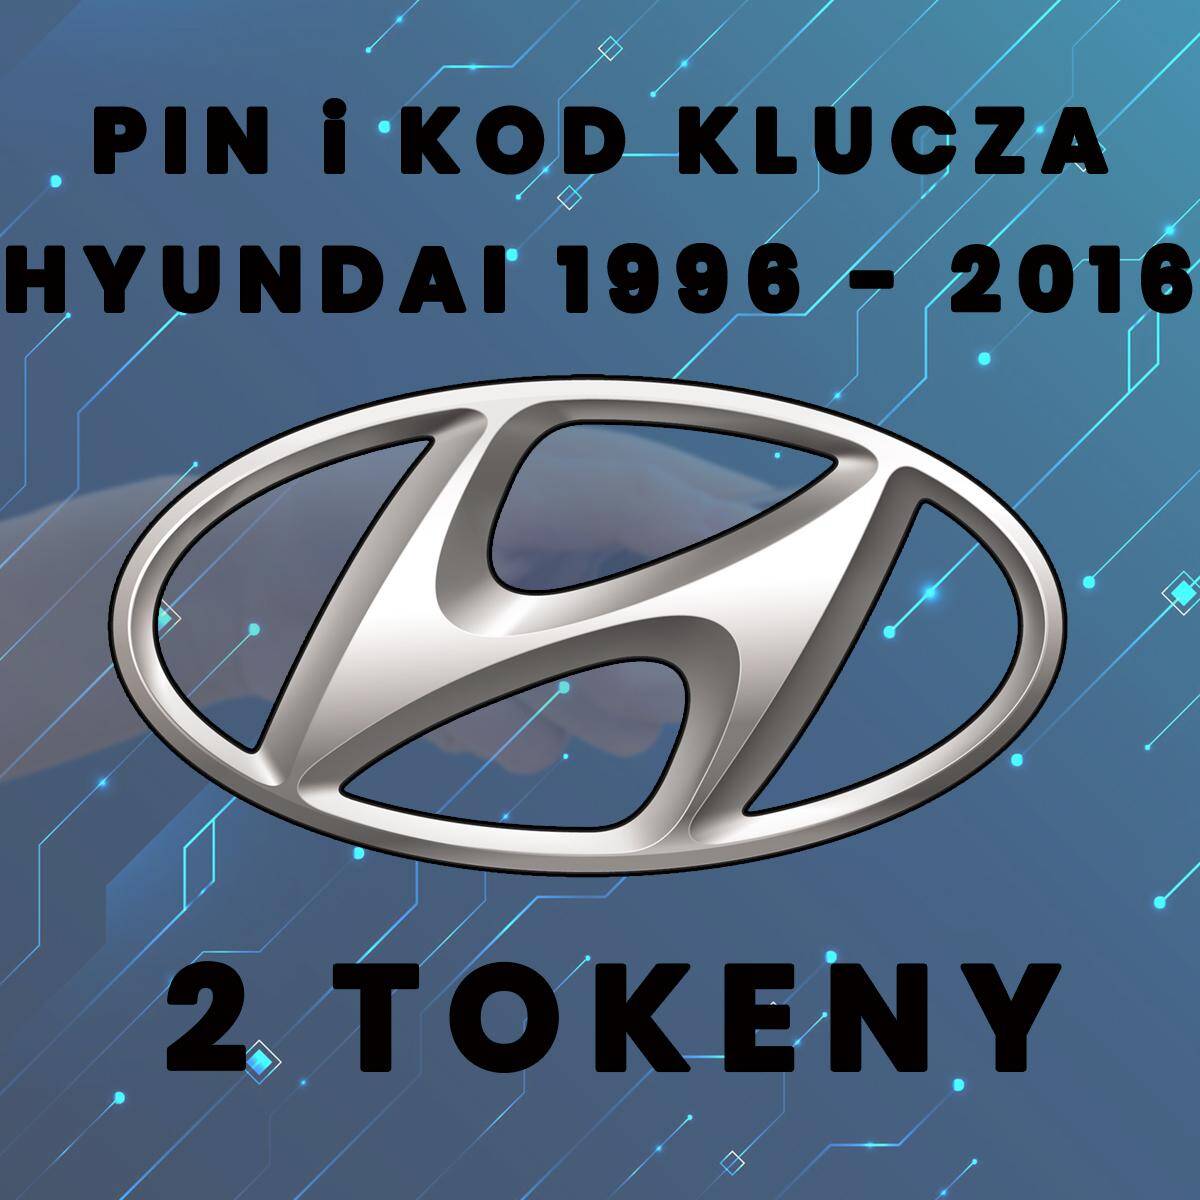 Pin und schlüsselcode Hyundai seit 2017 - 2020